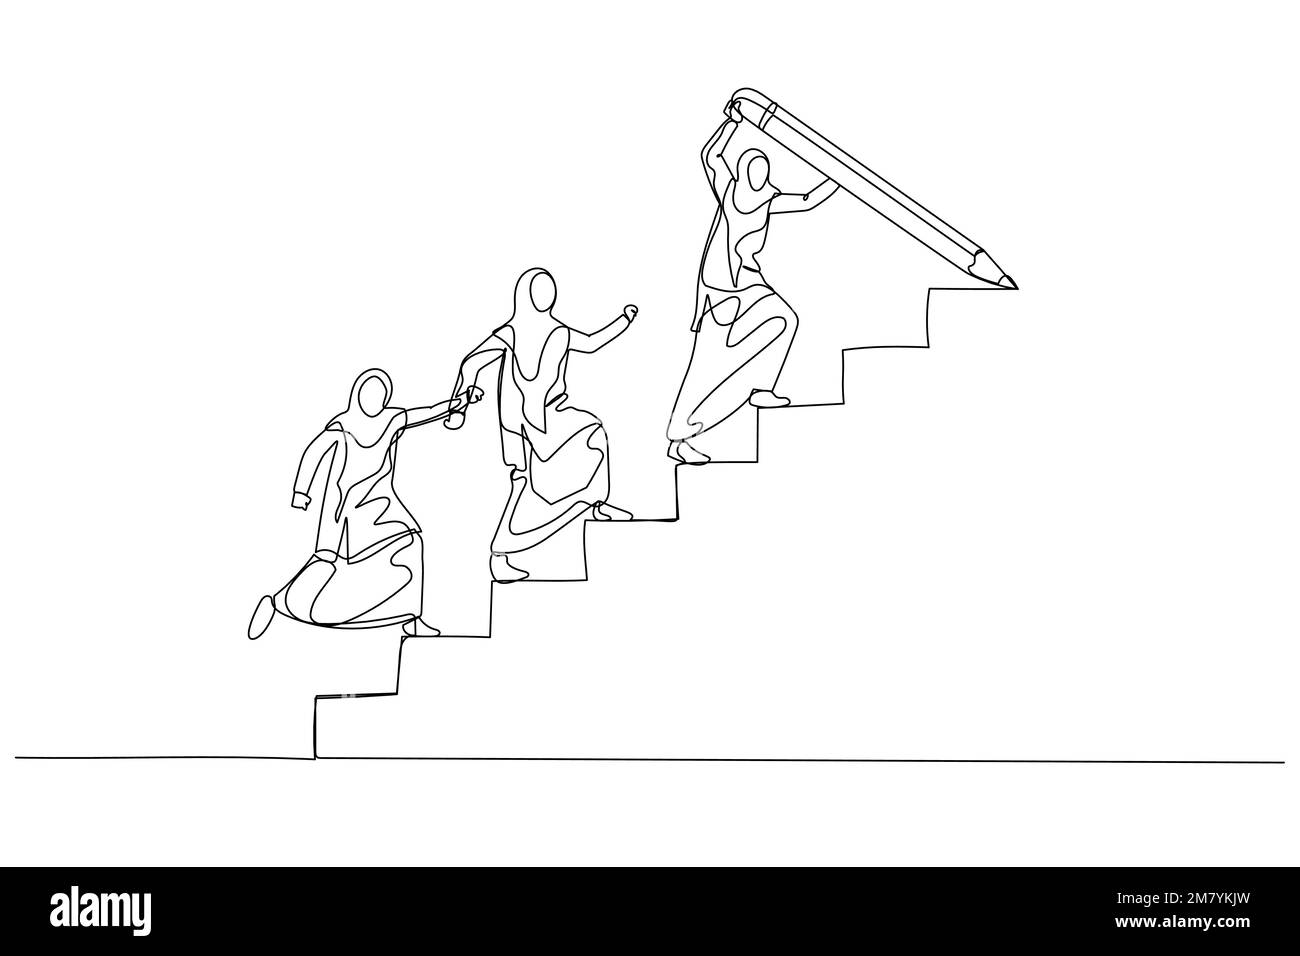 Dessin d'une femme musulmane dessiner un escalier avec un crayon pour diriger l'équipe marcher vers le haut leader guide le concept de croissance de l'équipe. Un design de style art continu Illustration de Vecteur